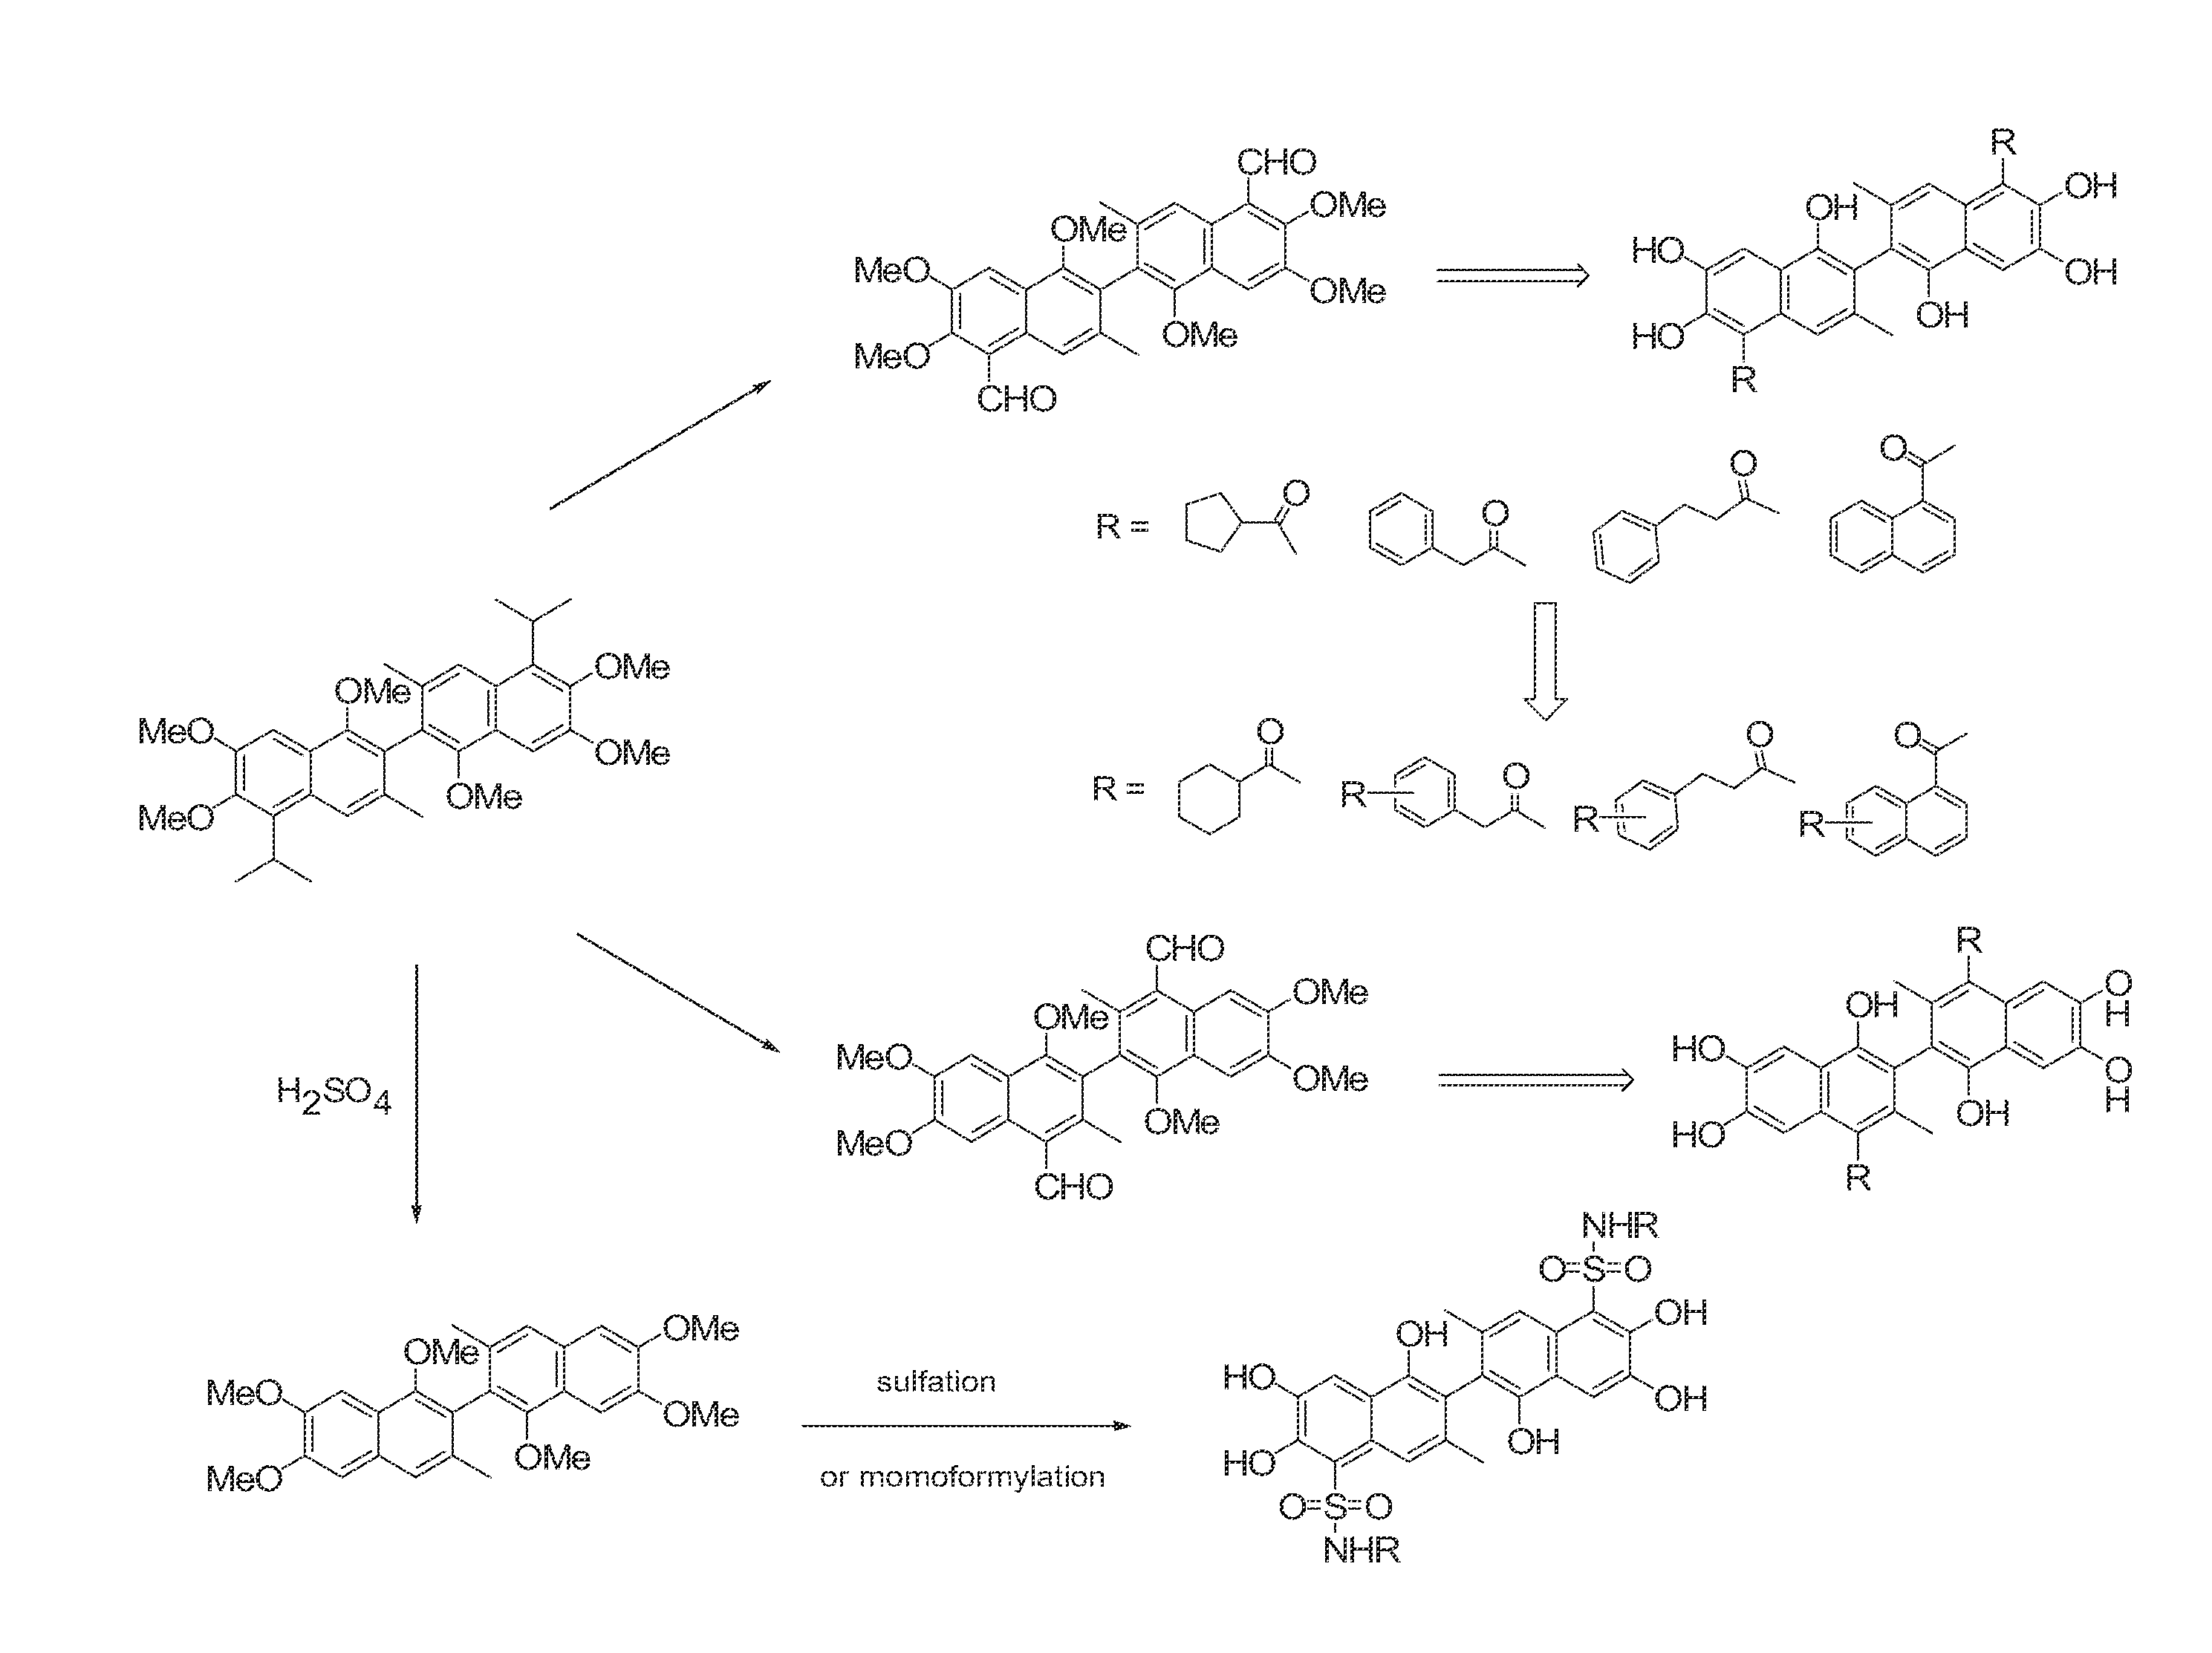 Naphthalene-based inhibitors of Anti-apoptotic proteins